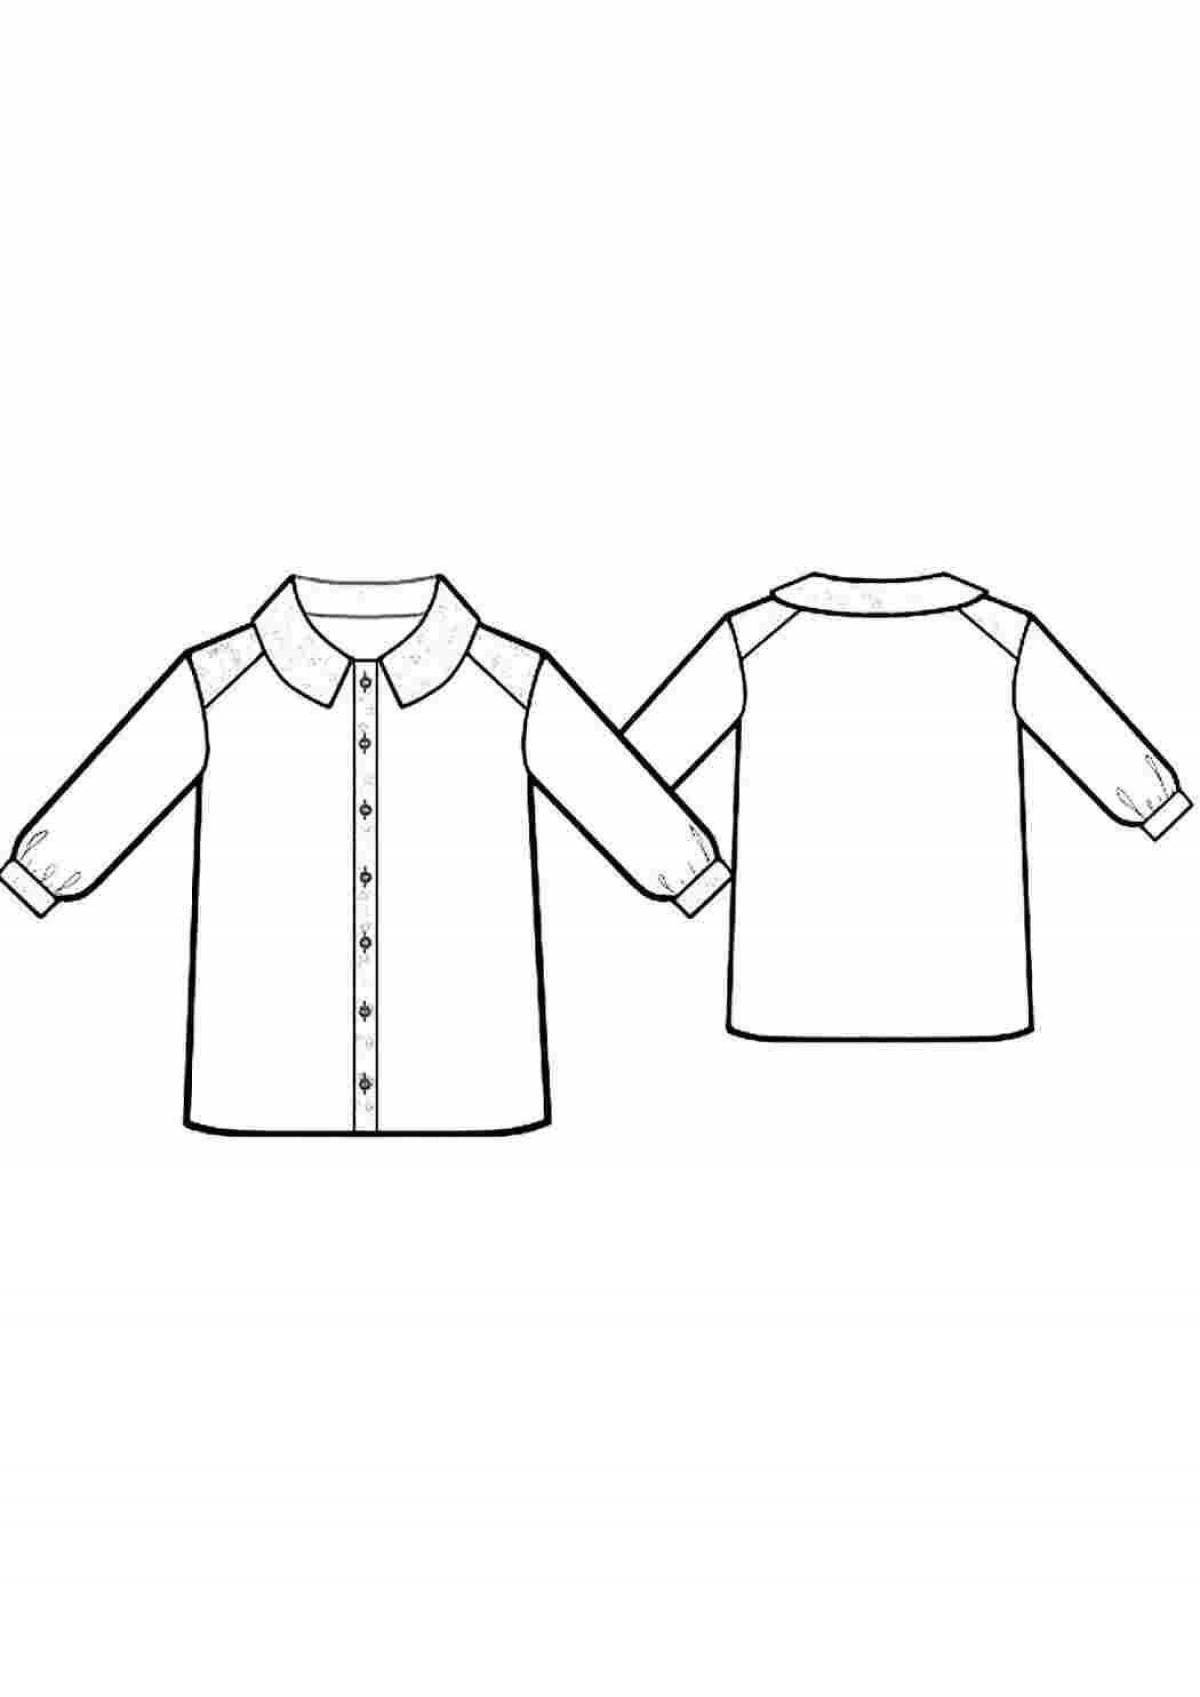 Креативная раскраска с рубашками для детей 3-4 лет